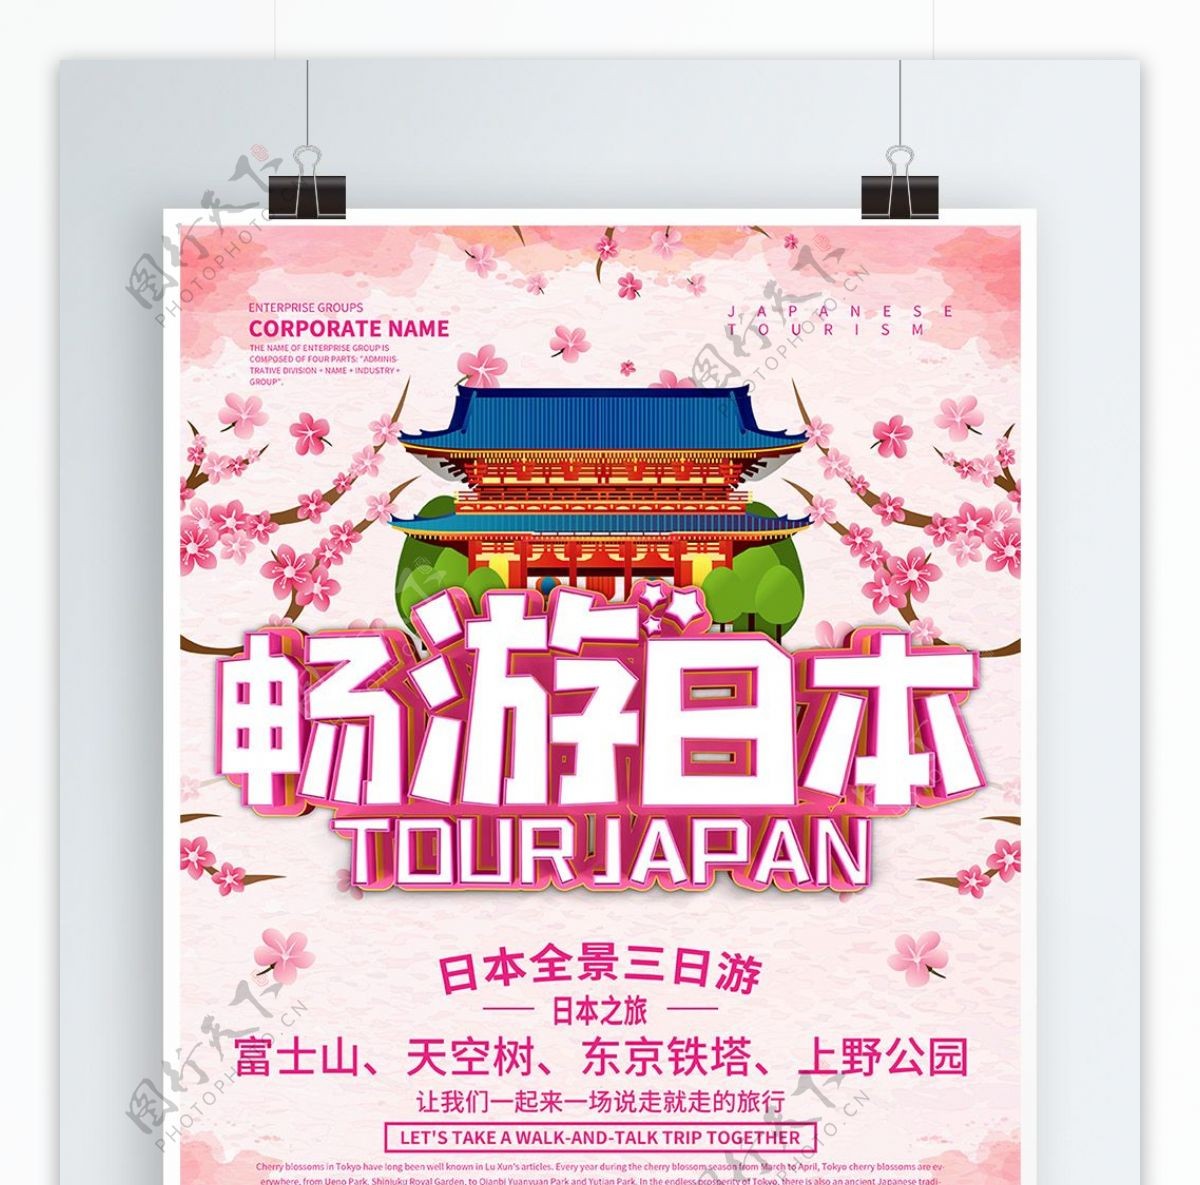 粉色唯美浪漫畅游日本旅游宣传海报设计